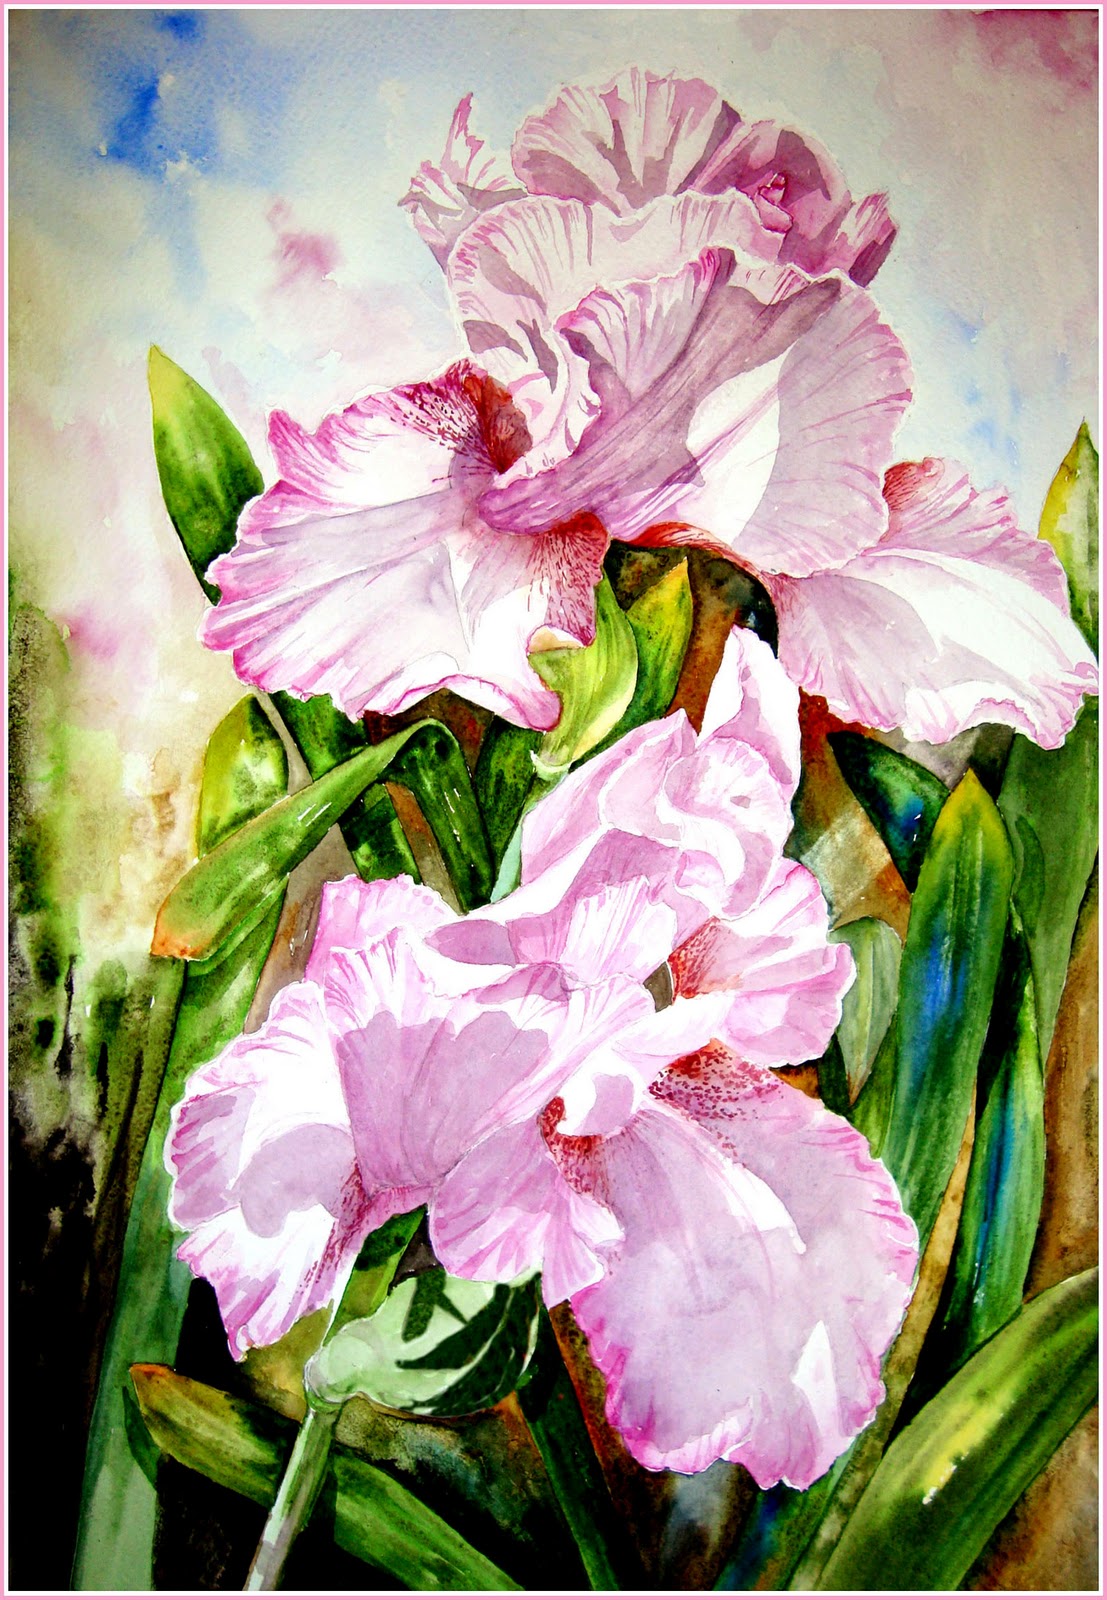 Watercolour Florals: Daniel Smith Paints